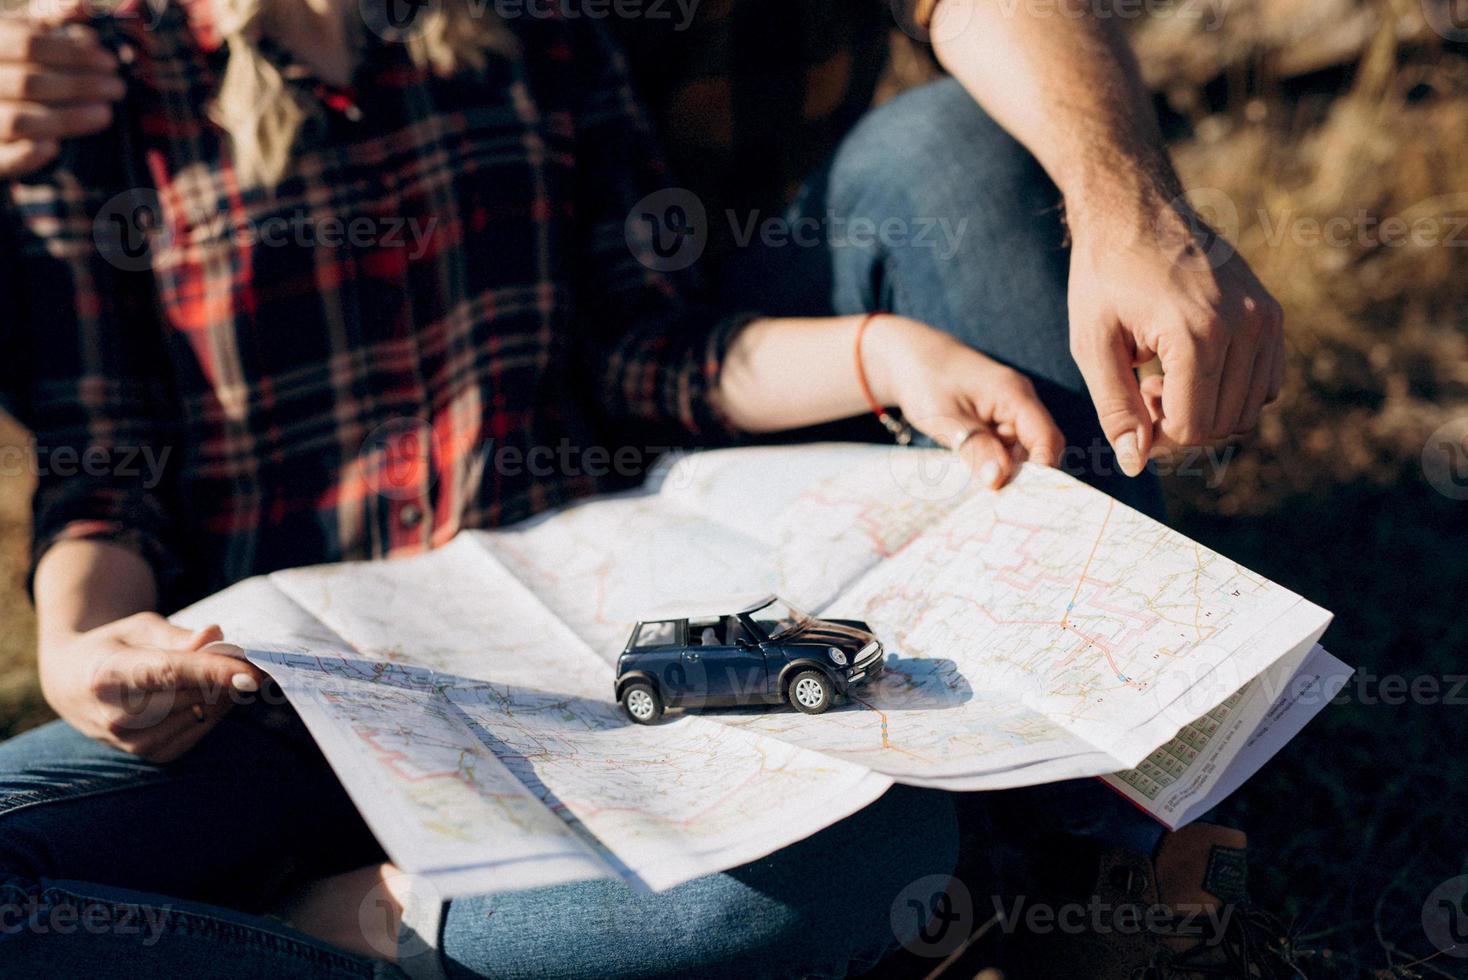 chico calvo con barba y una chica rubia están mirando el mapa y buscando foto